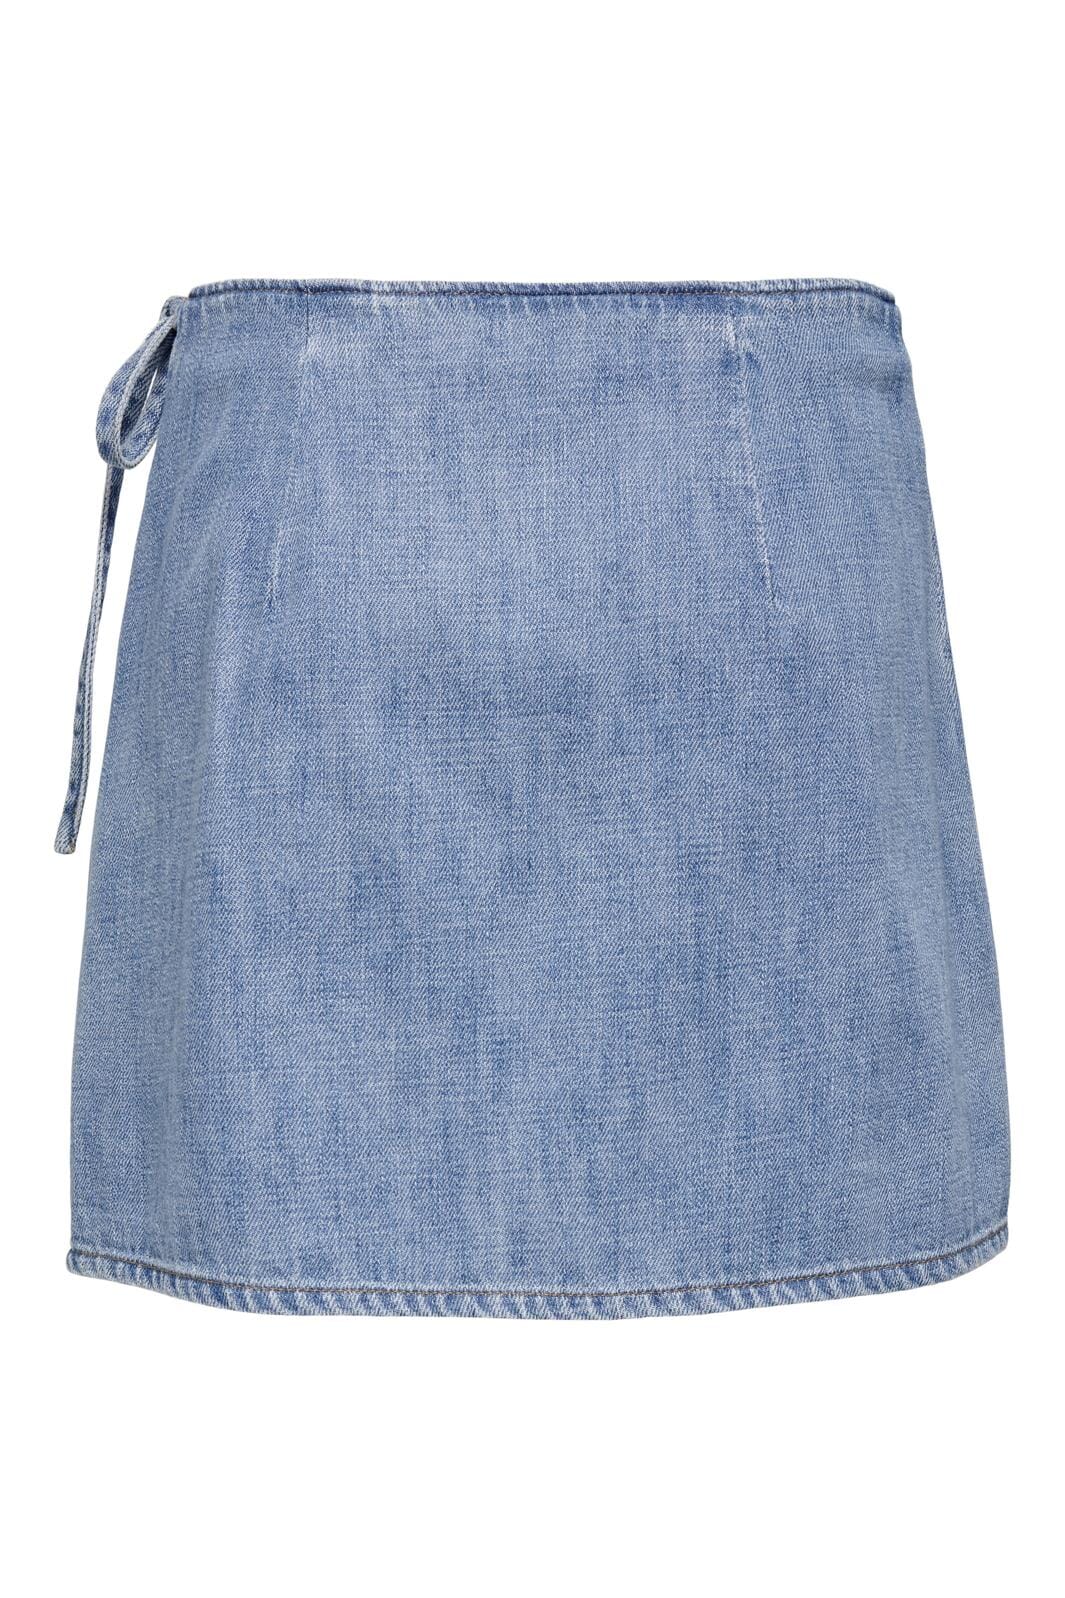 Only - Onlnoelle Wrap Skirt Yor - 4536874 Light Blue Denim